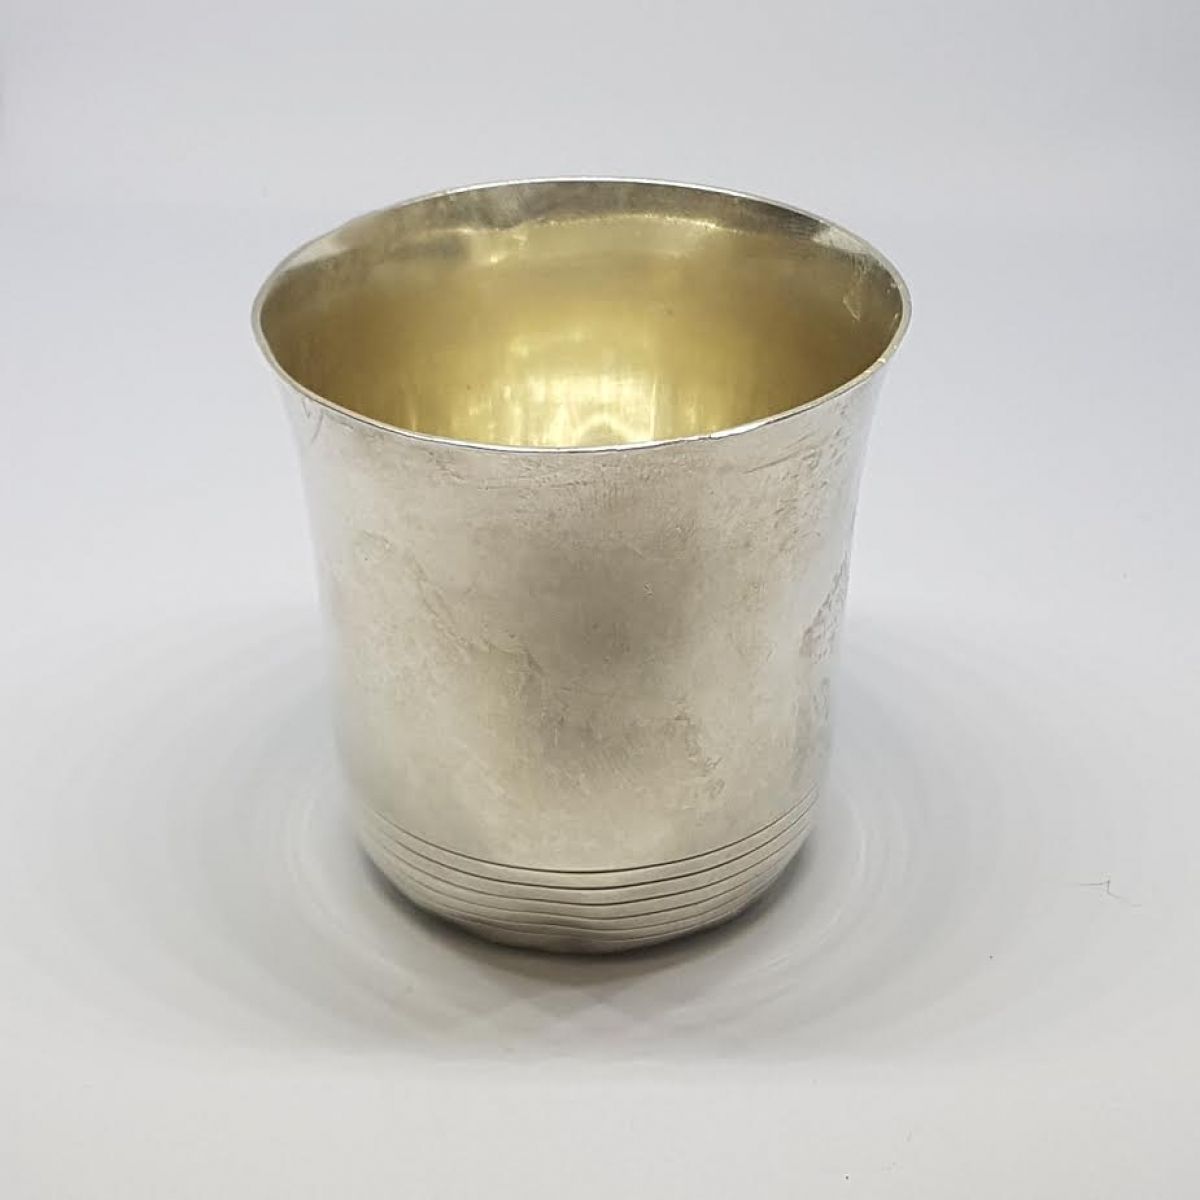 Srebrna čaša / 75,70 grama / srebro 800